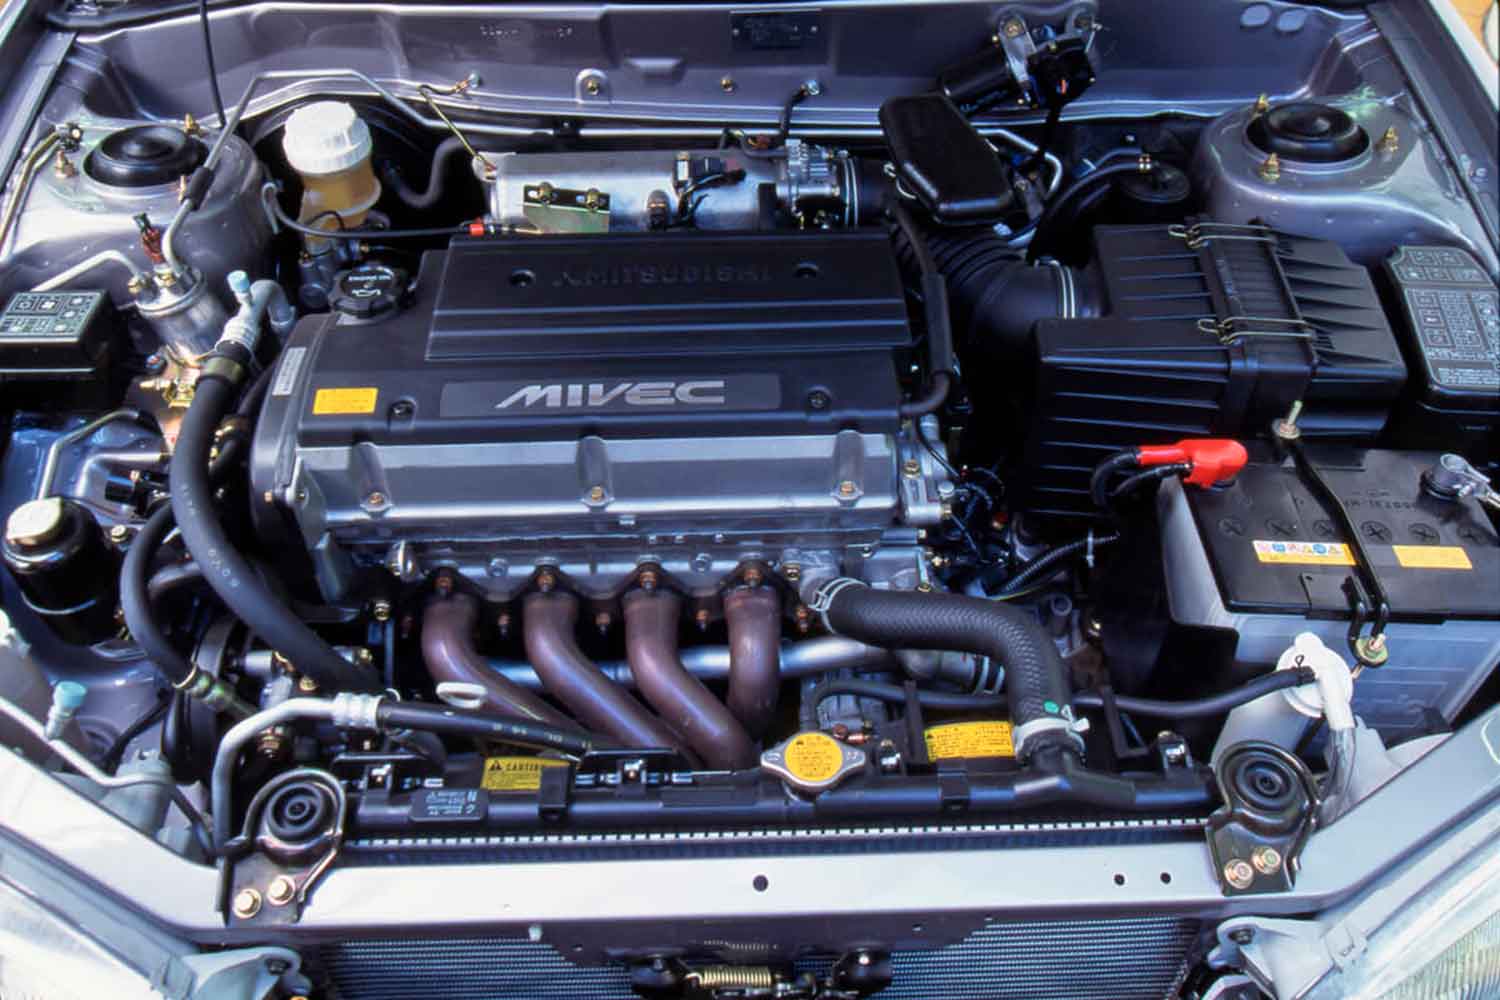 三菱ミラージュの1.6リッター MIVECエンジン